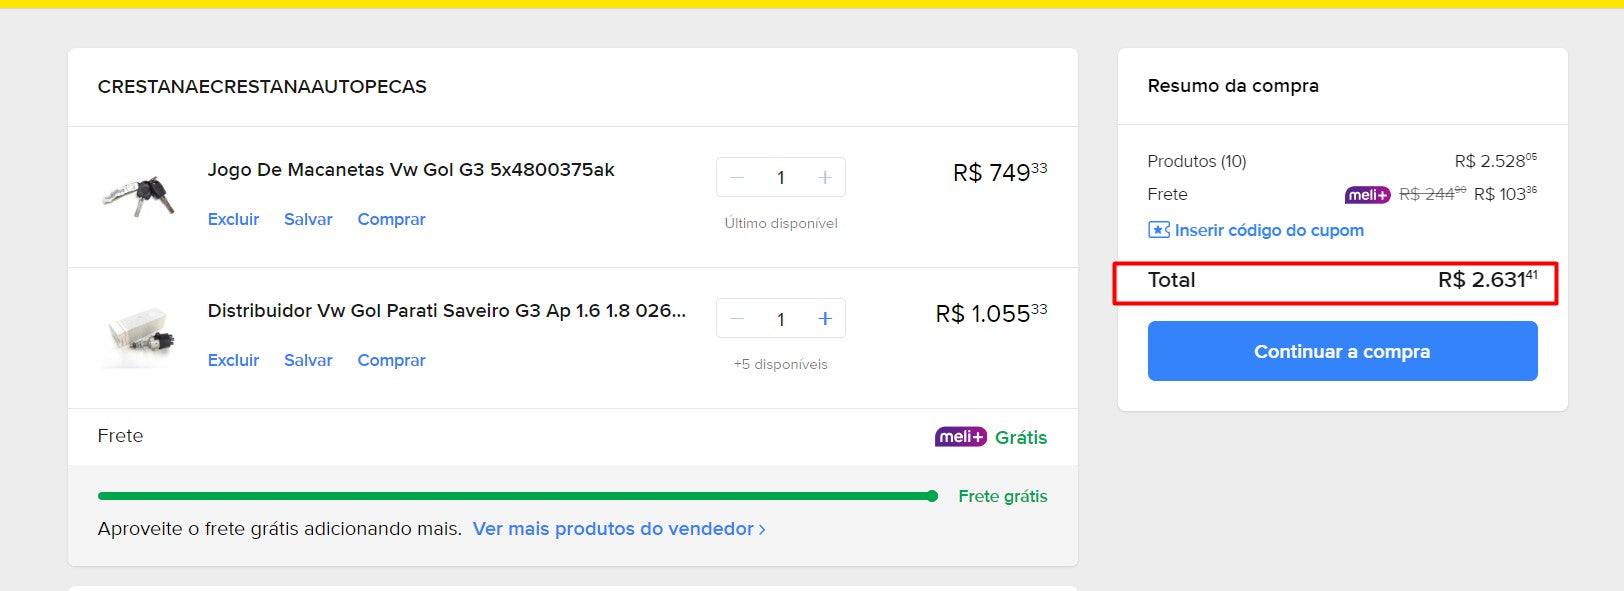 パーソナルショッパー | ブラジルから購入 -CAR PARTS - 11 アイテム (DDP)